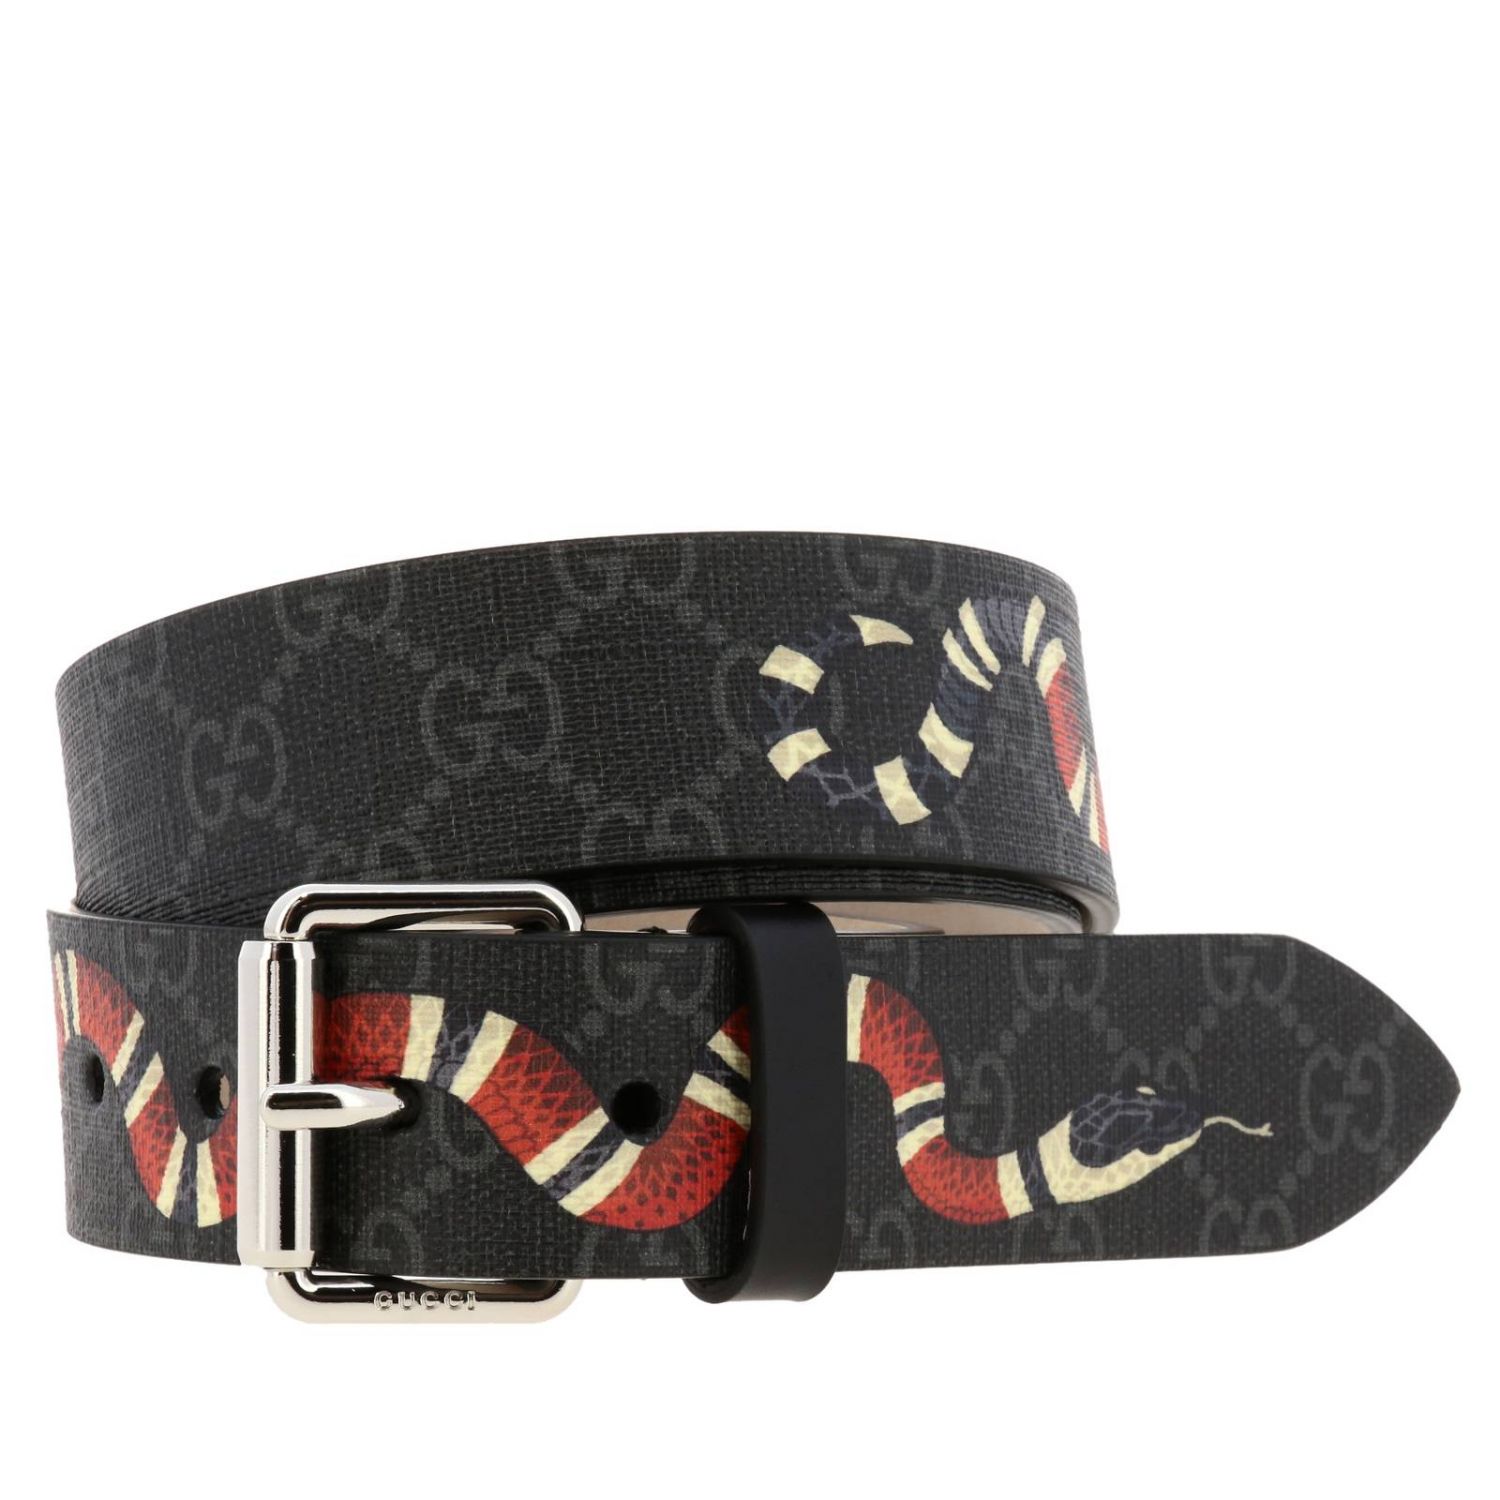 snake gucci belts